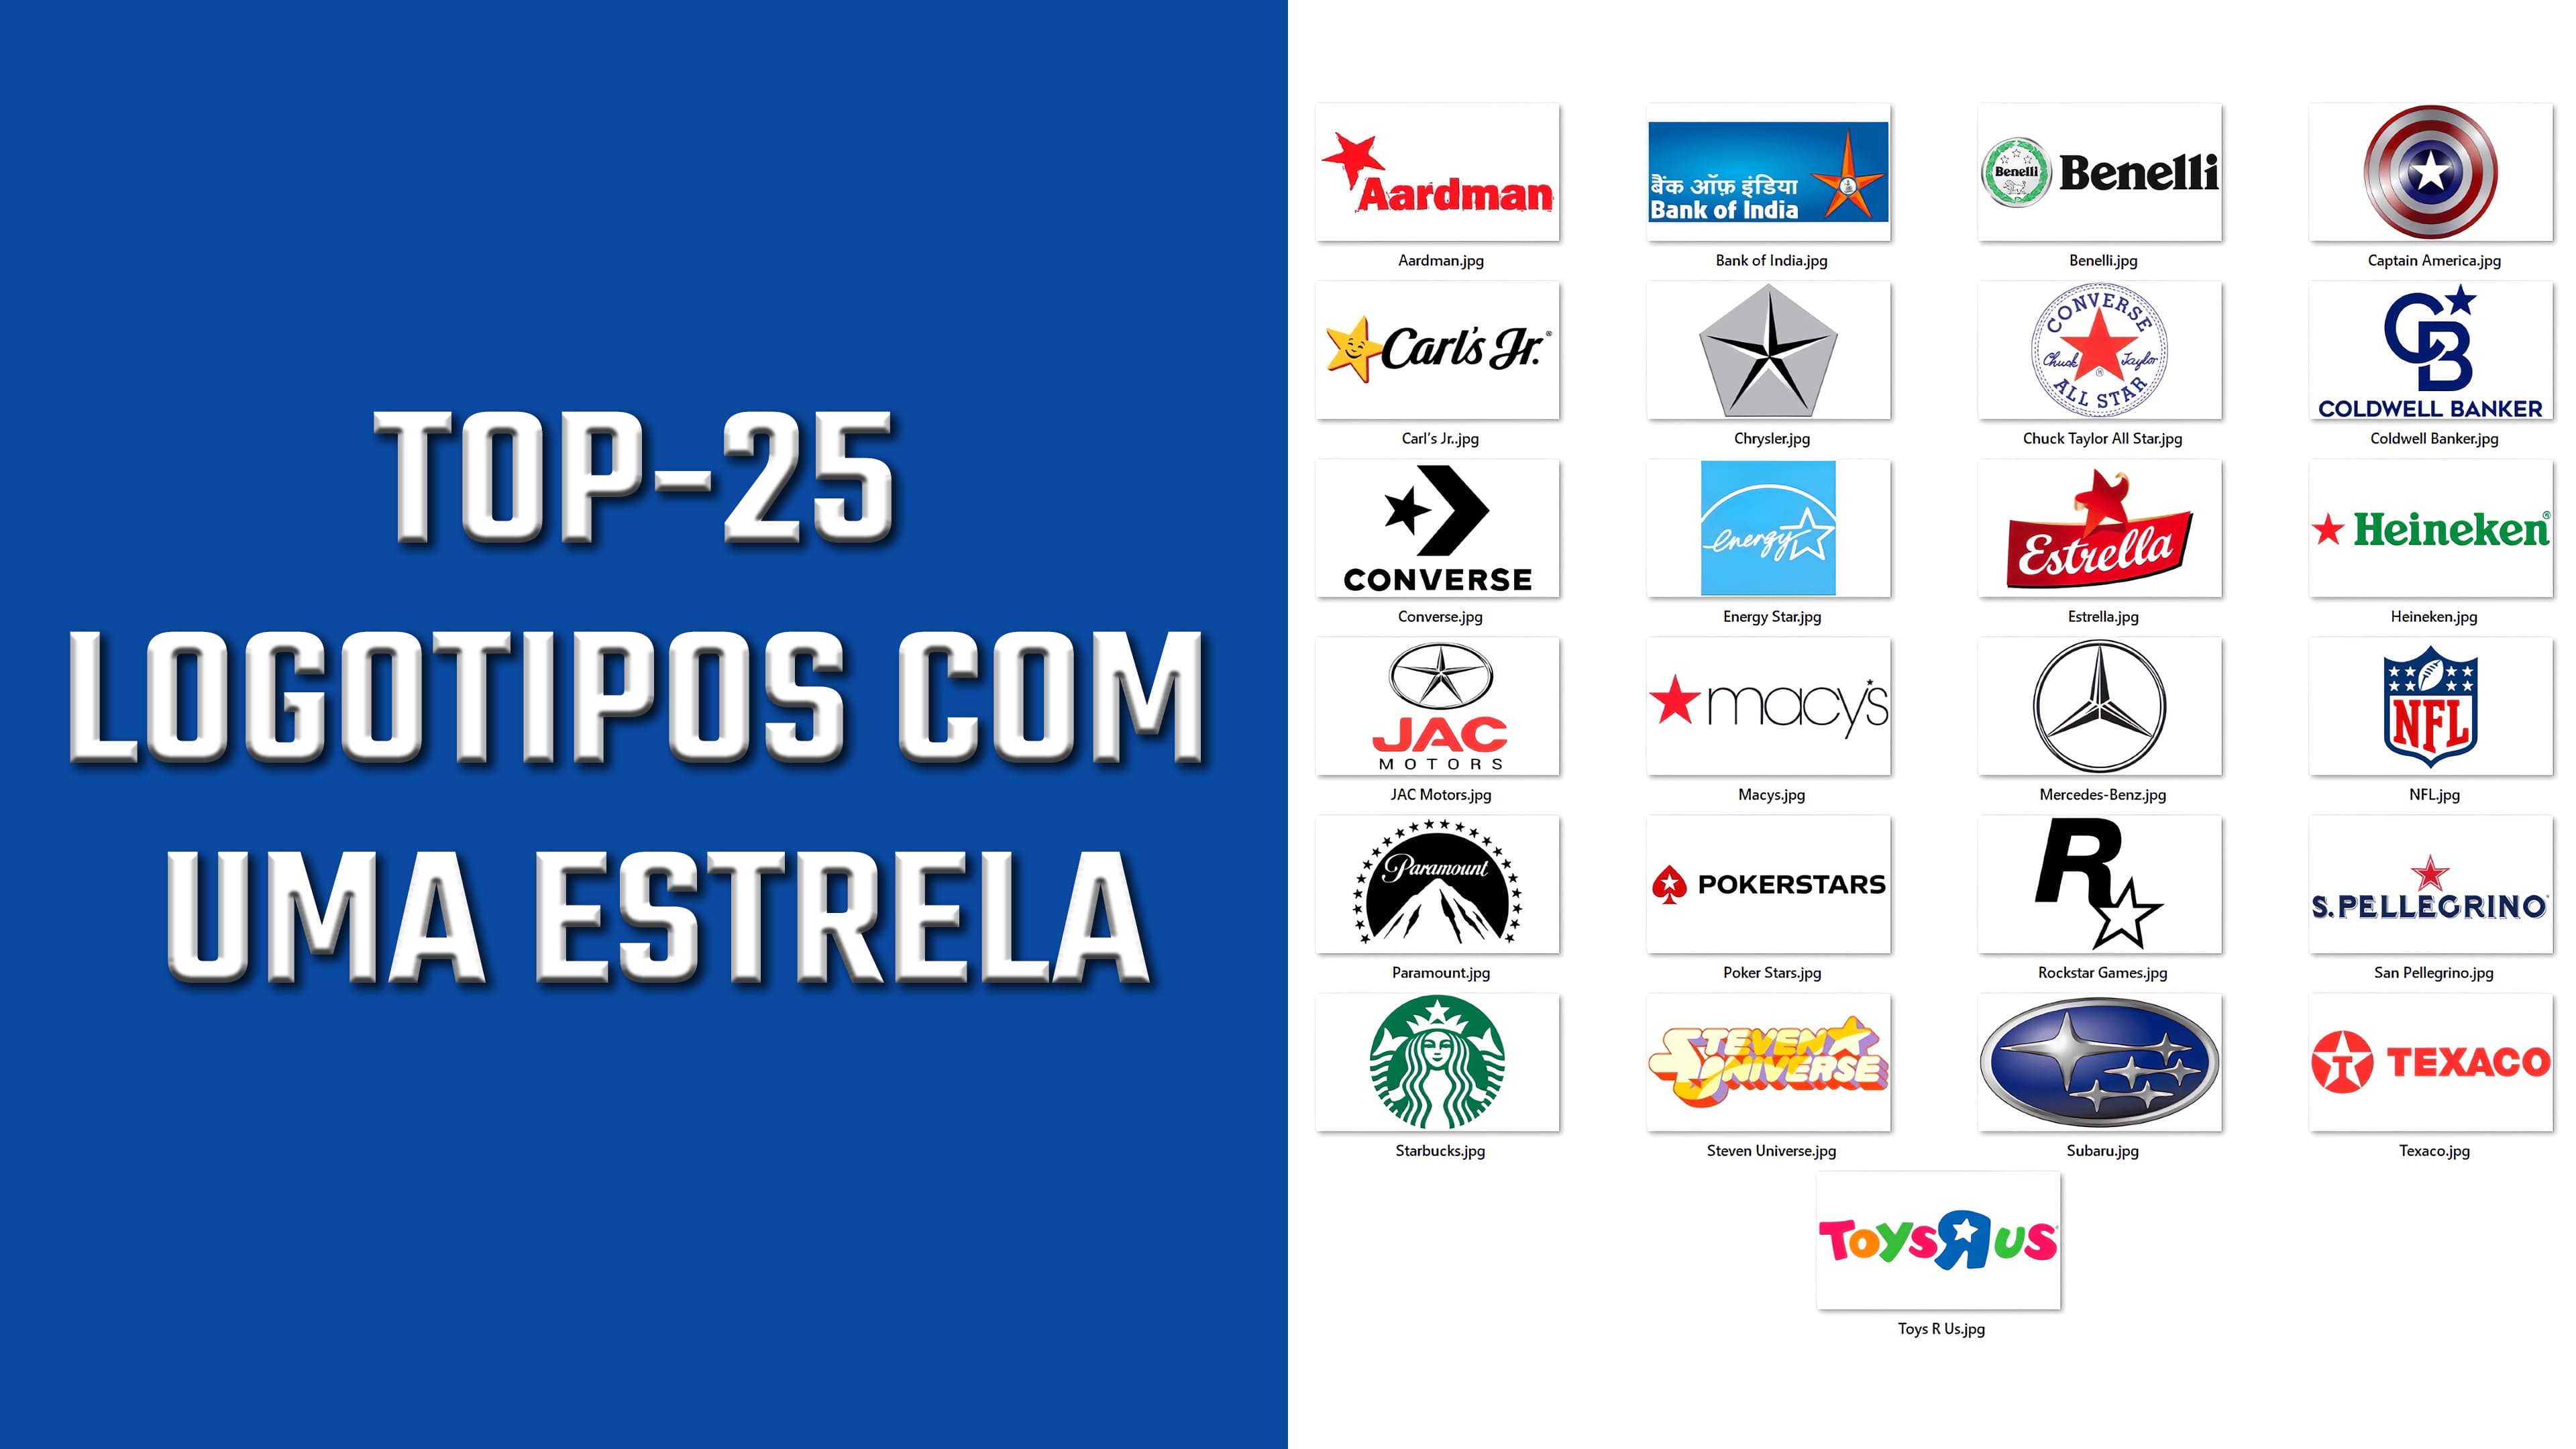 Top-25 logotipos com uma estrela